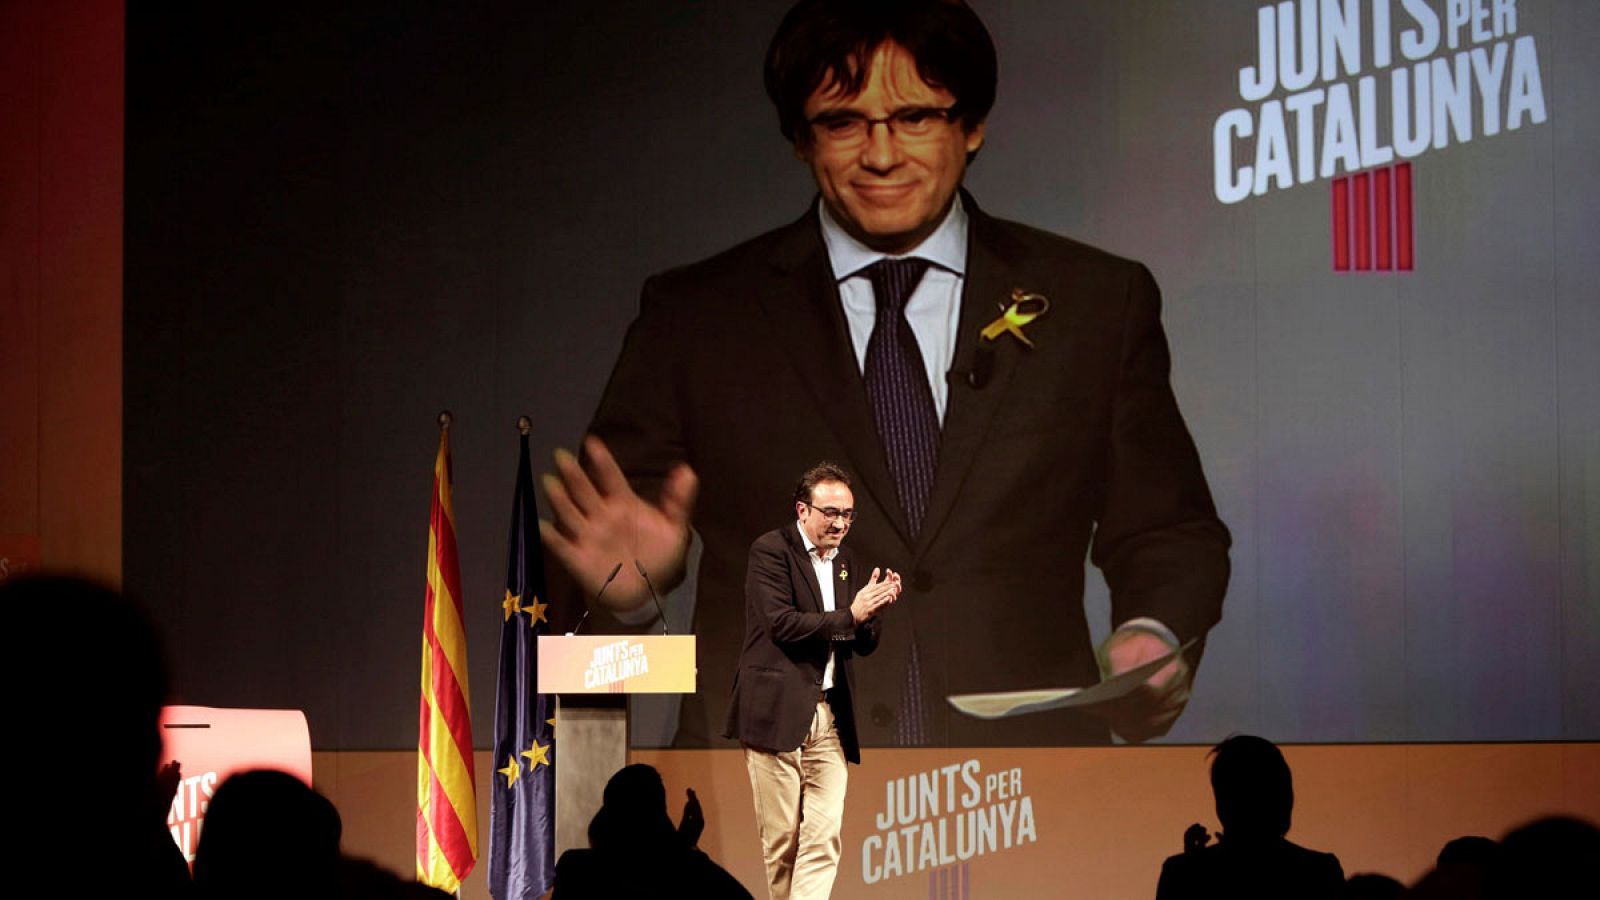 El candidato número uno de Junts per Catalunya (JxCat), Carles Puigdemont, interviene por videoconferencia desde Bruselas durante el mitin de su partido celebrado en Igualada (Barcelona).